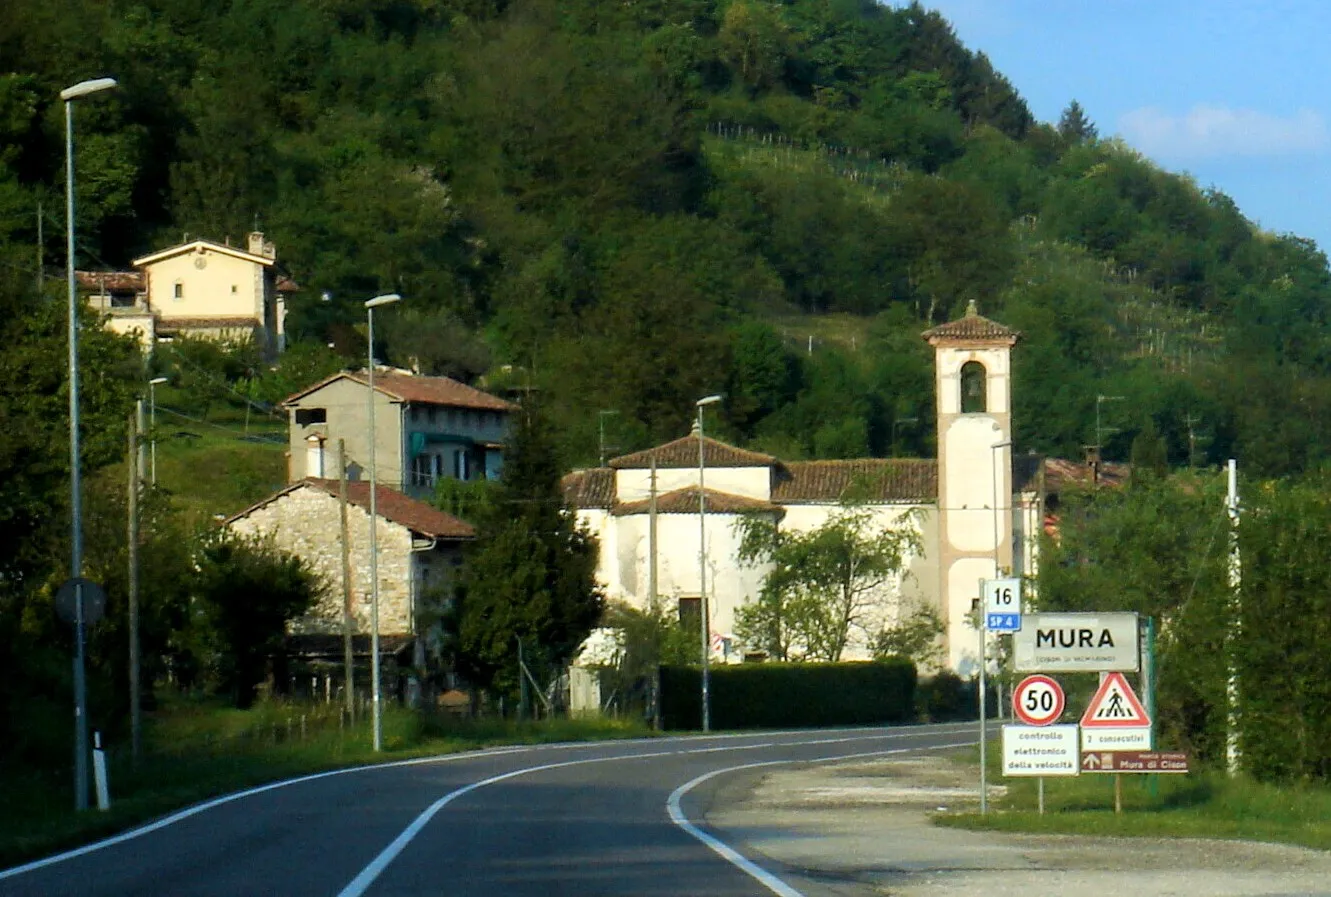 Photo showing: Mura (Cison di Valmarino), Treviso, Italy